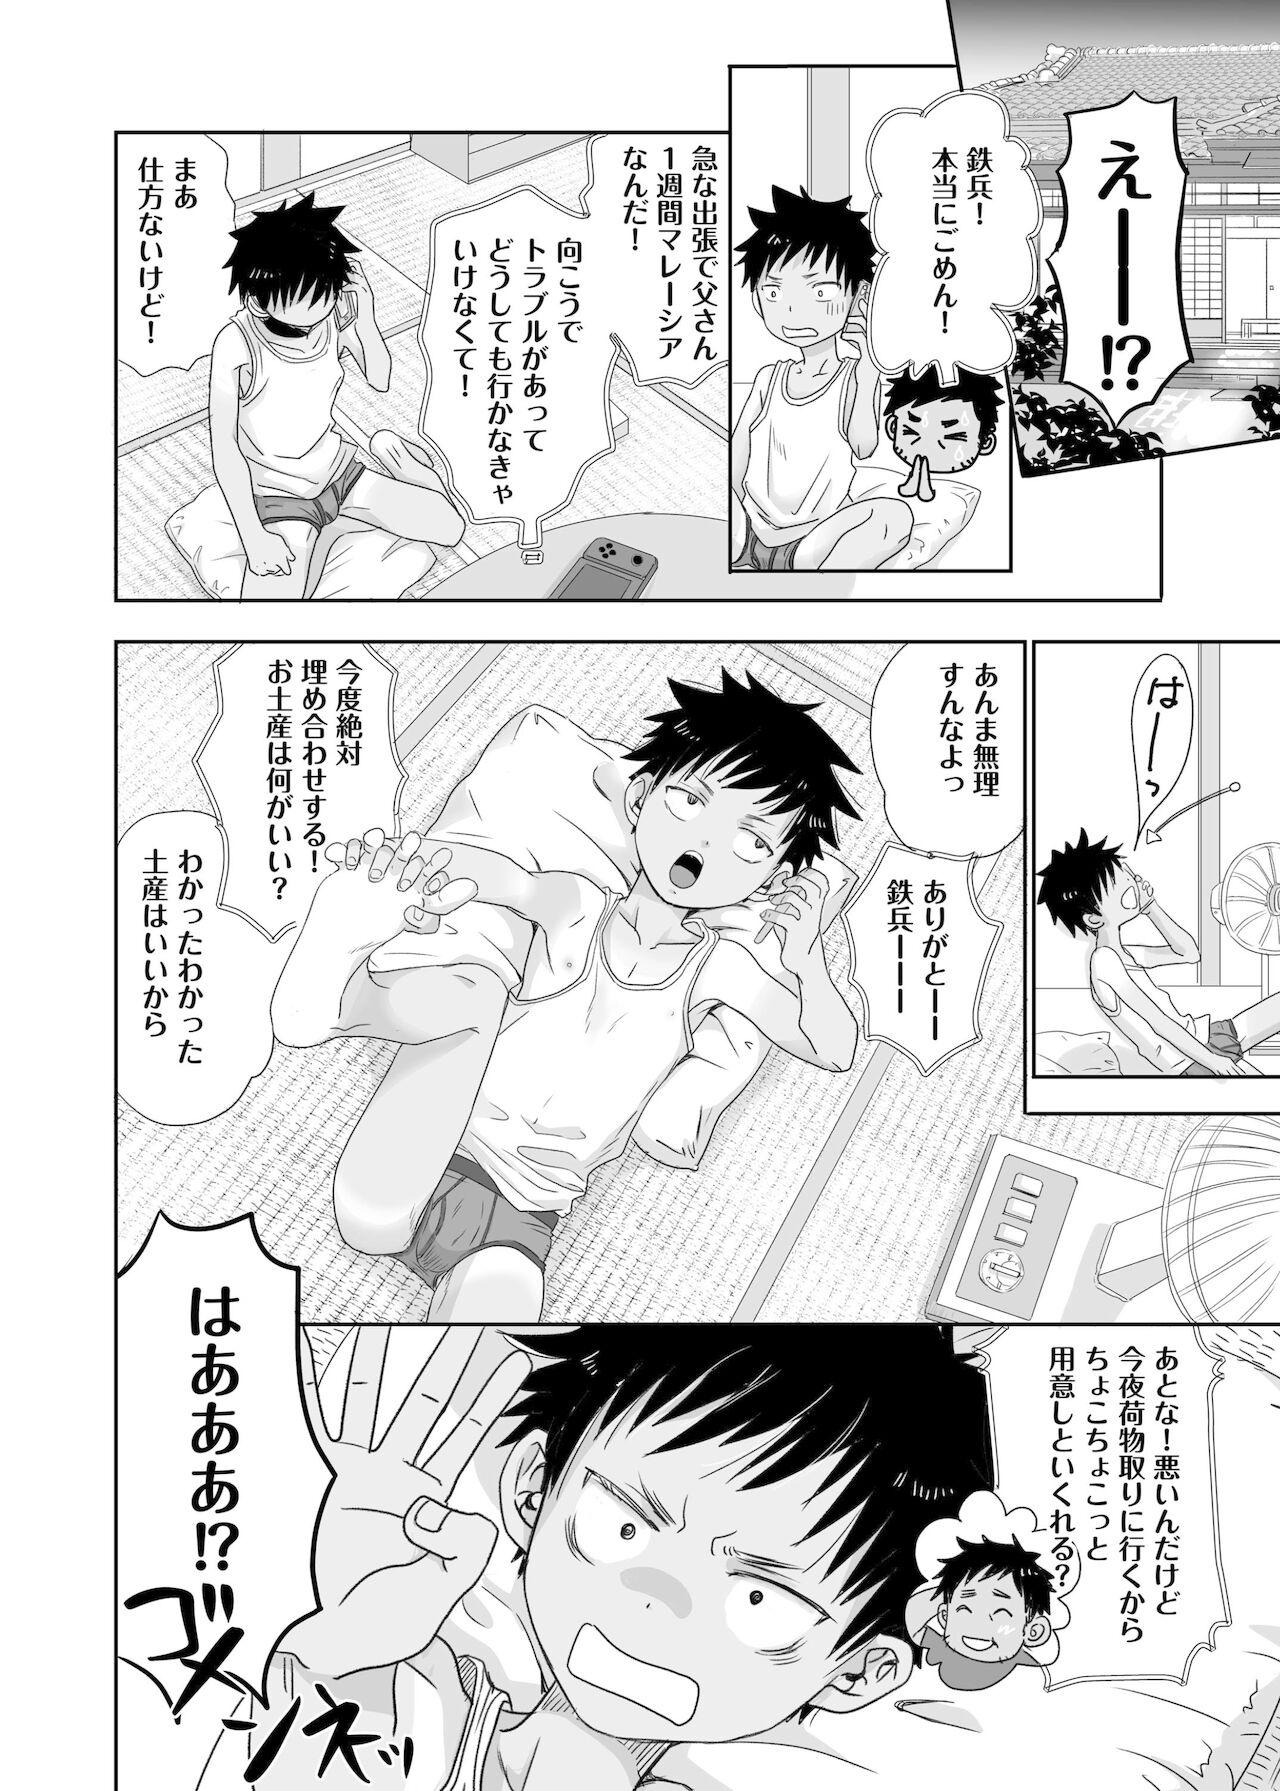 4some Tonari no oniisan no Karada ga sugokute ki ni naru. Girl - Page 6